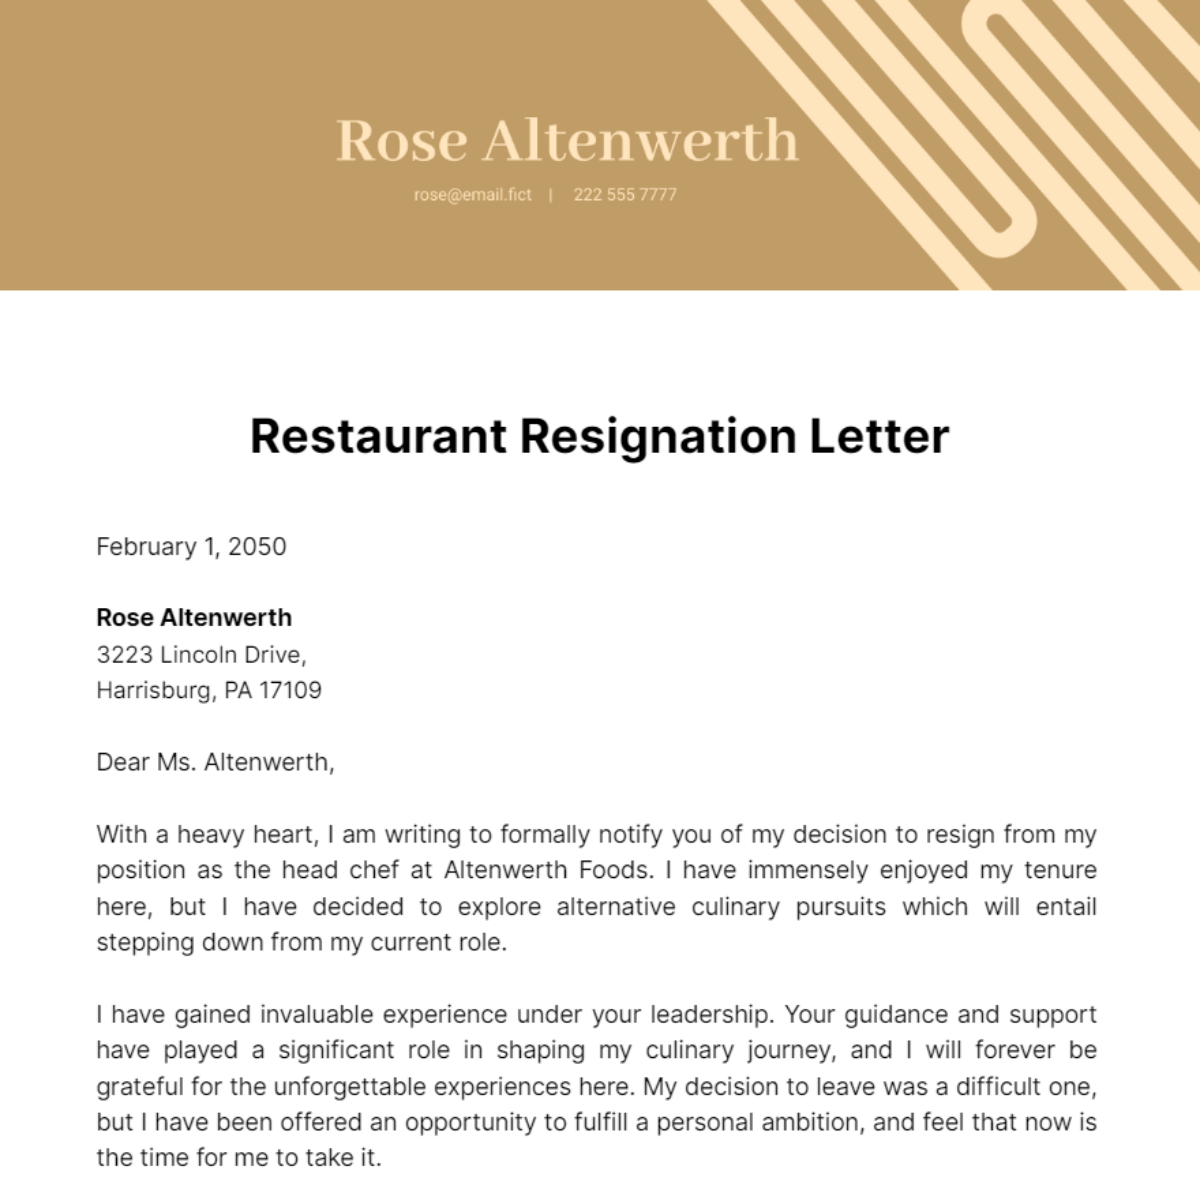 Restaurant Resignation Letter Template